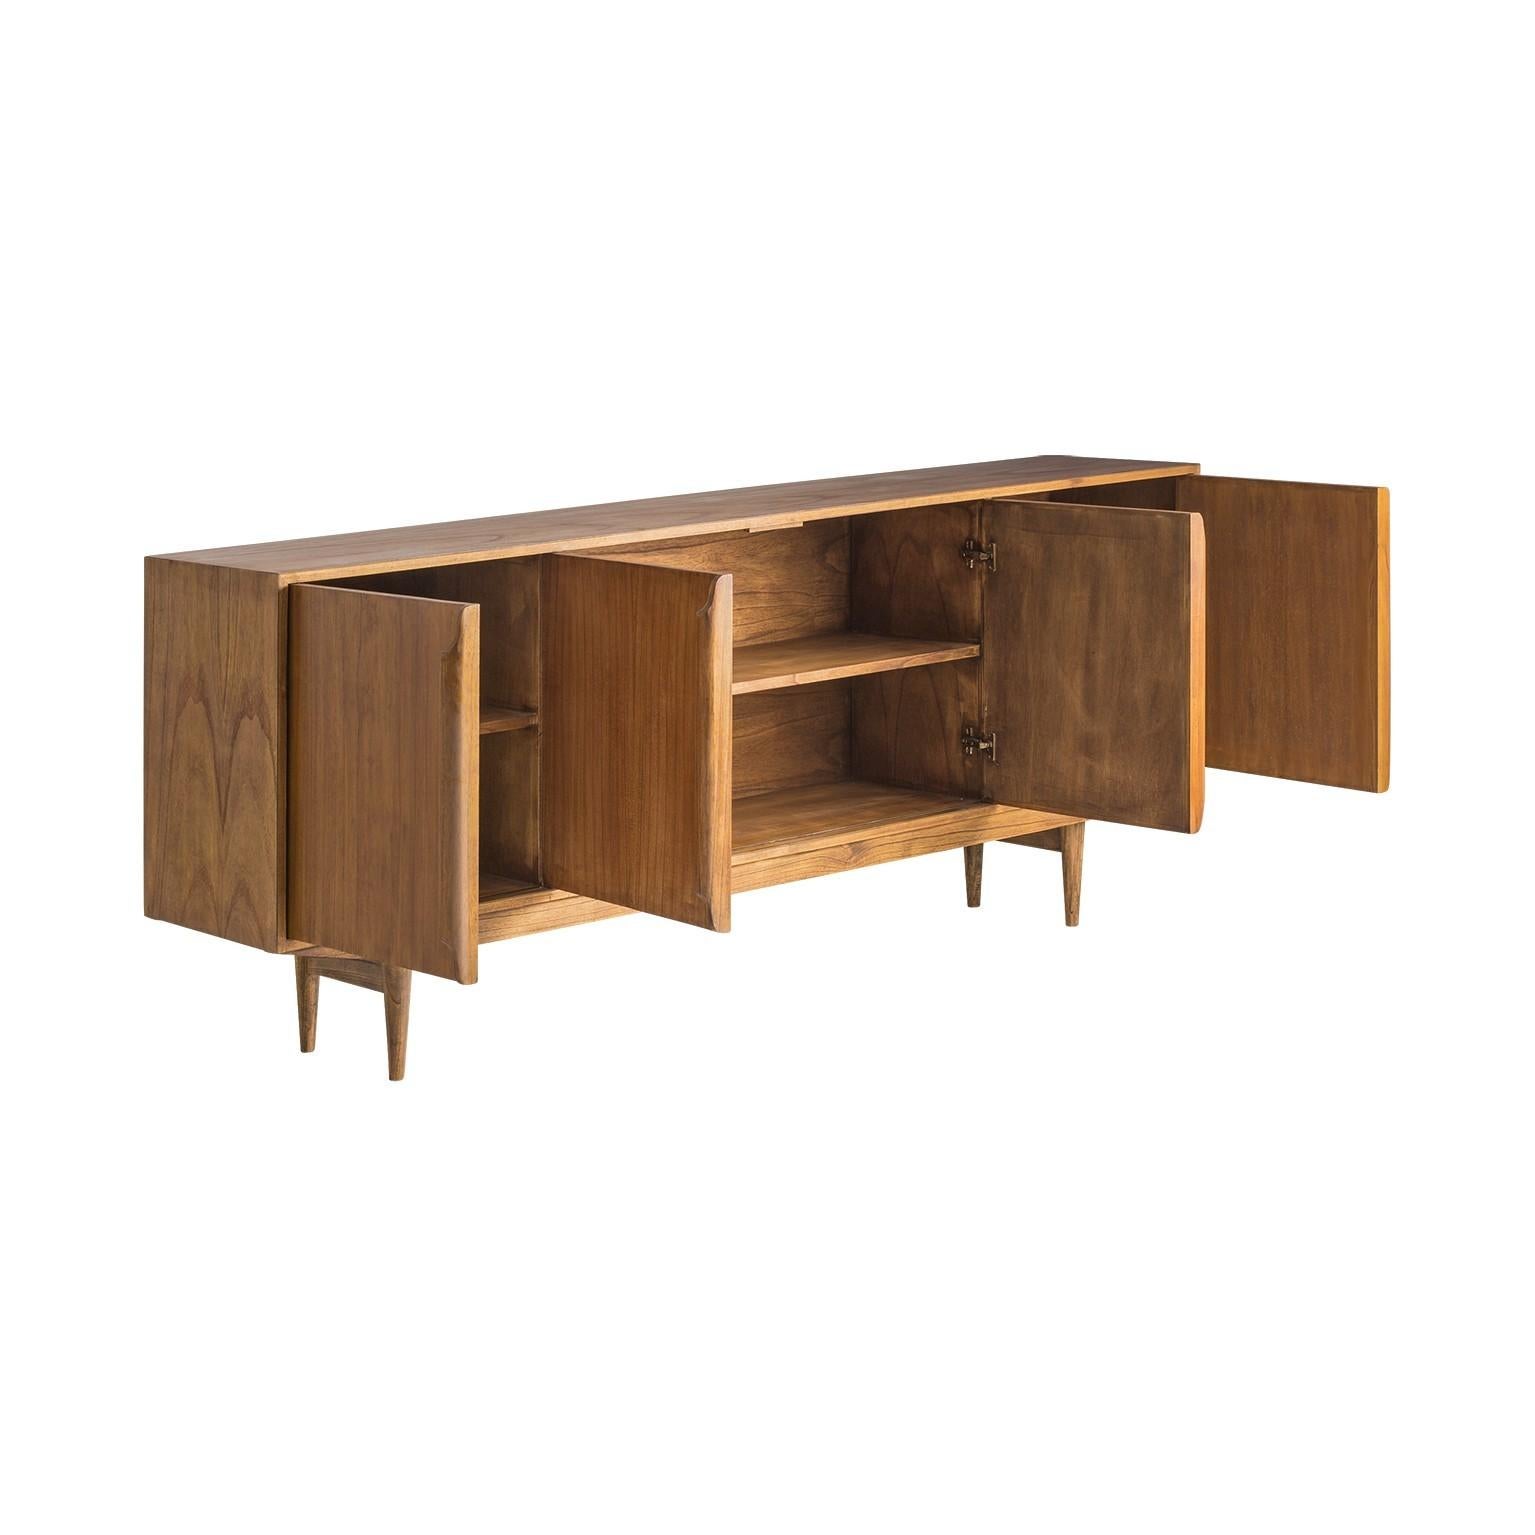 Scandinavian Modern 1960s Design and Danish Look Wooden Sideboard